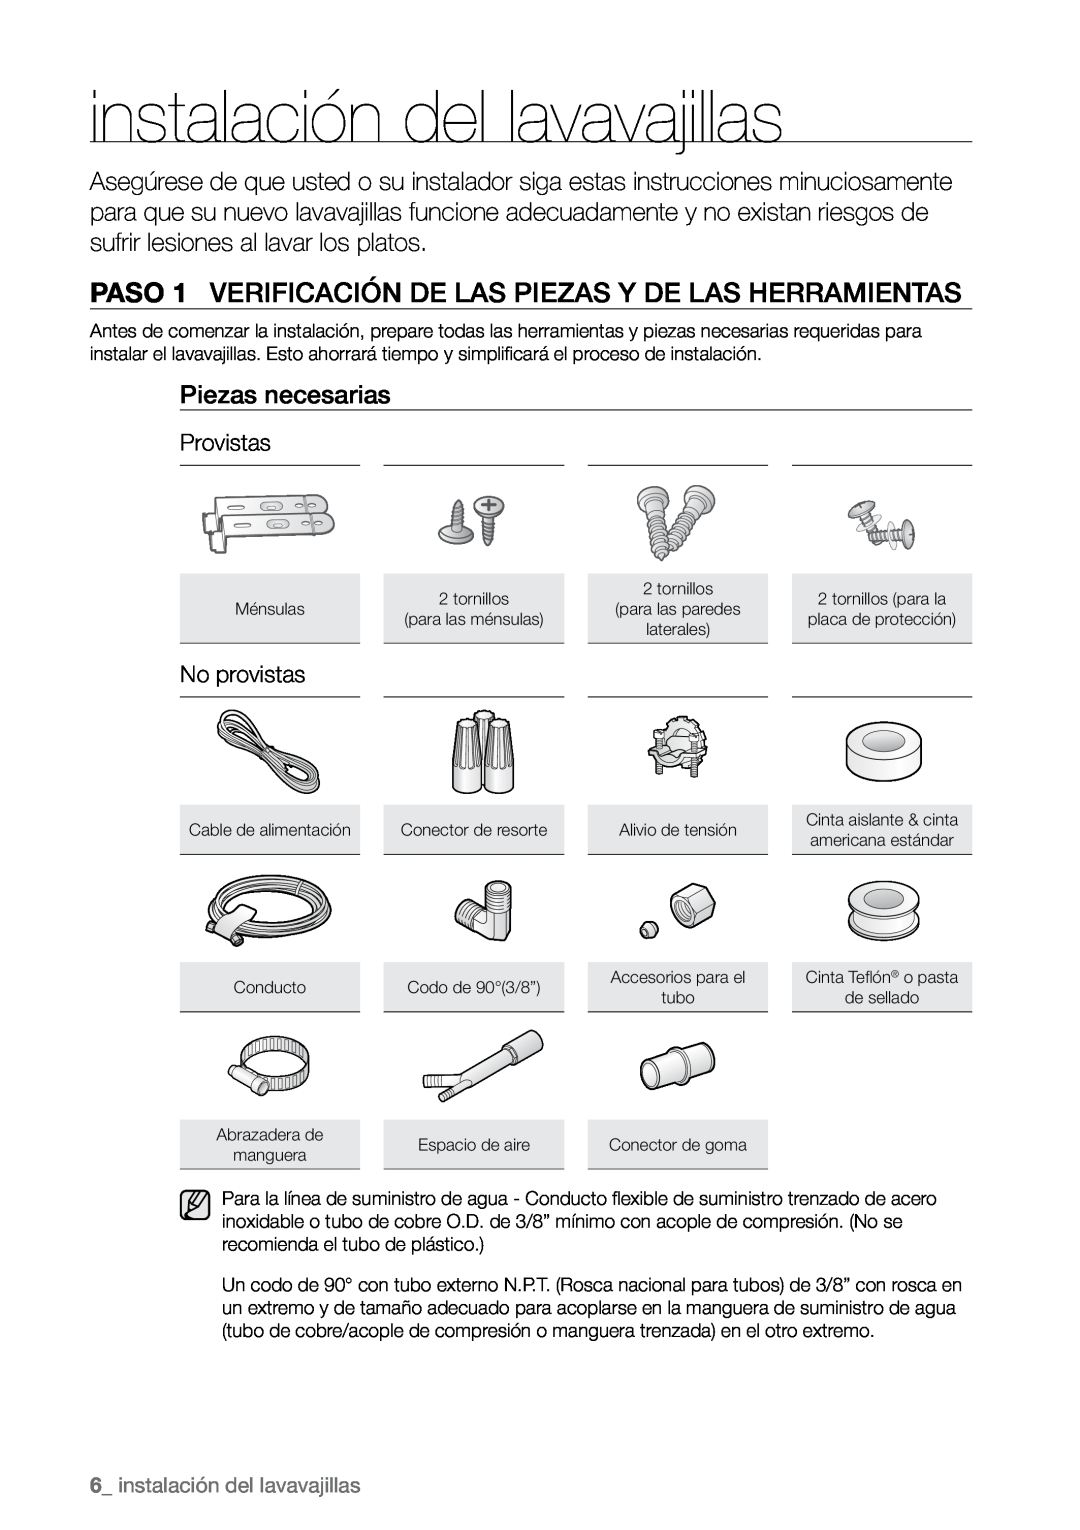 Samsung DMR78, DMR57, DMR77 manual Piezas necesarias, Provistas, No provistas,  instalación del lavavajillas 